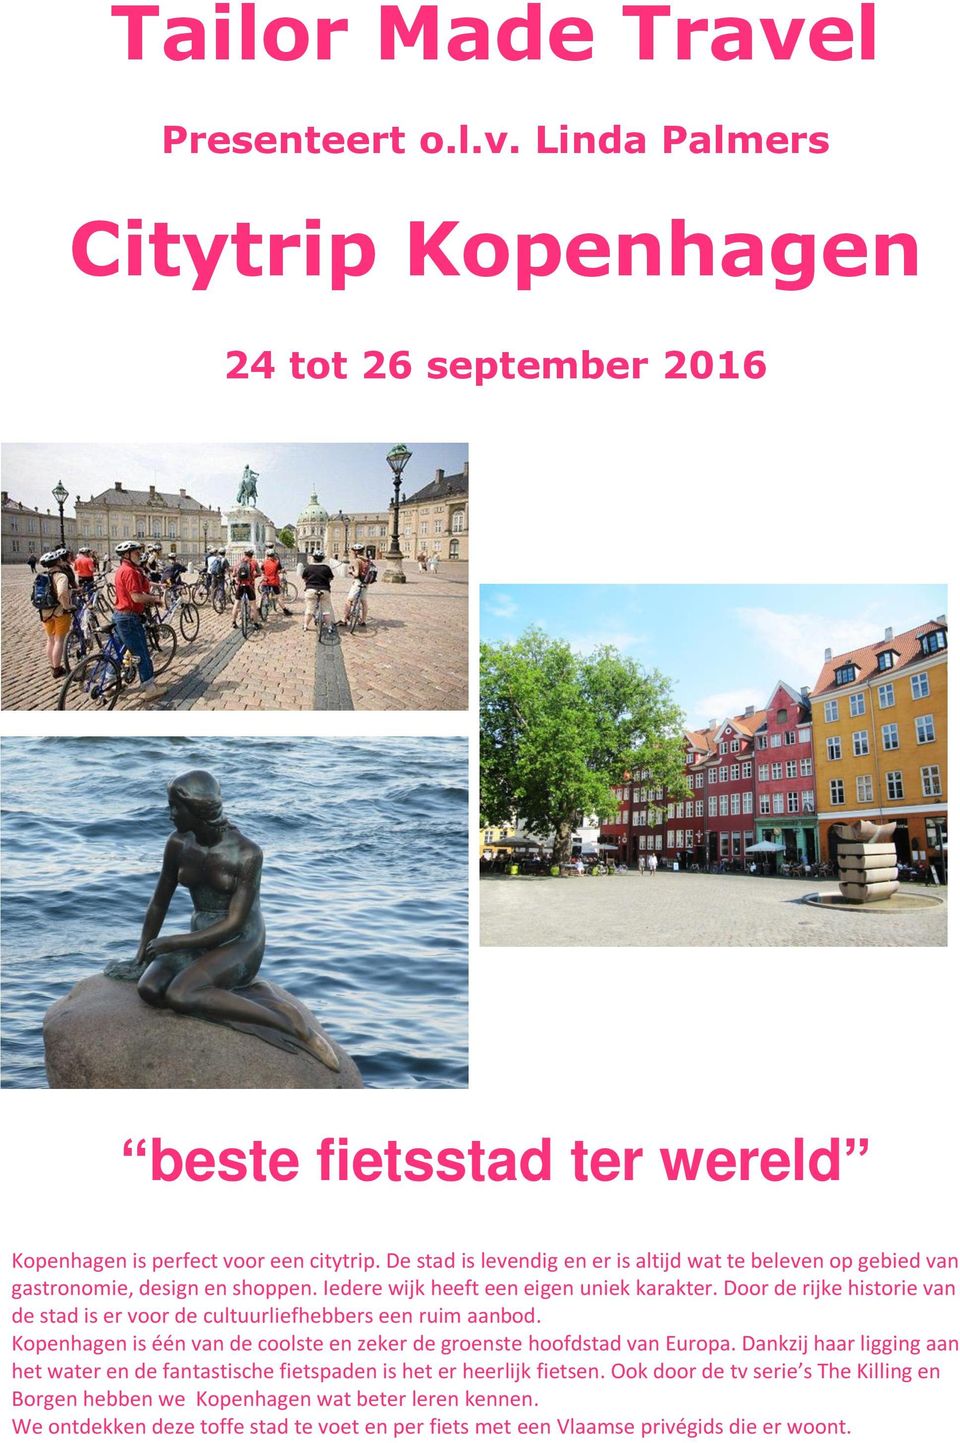 Door de rijke historie van de stad is er voor de cultuurliefhebbers een ruim aanbod. Kopenhagen is één van de coolste en zeker de groenste hoofdstad van Europa.